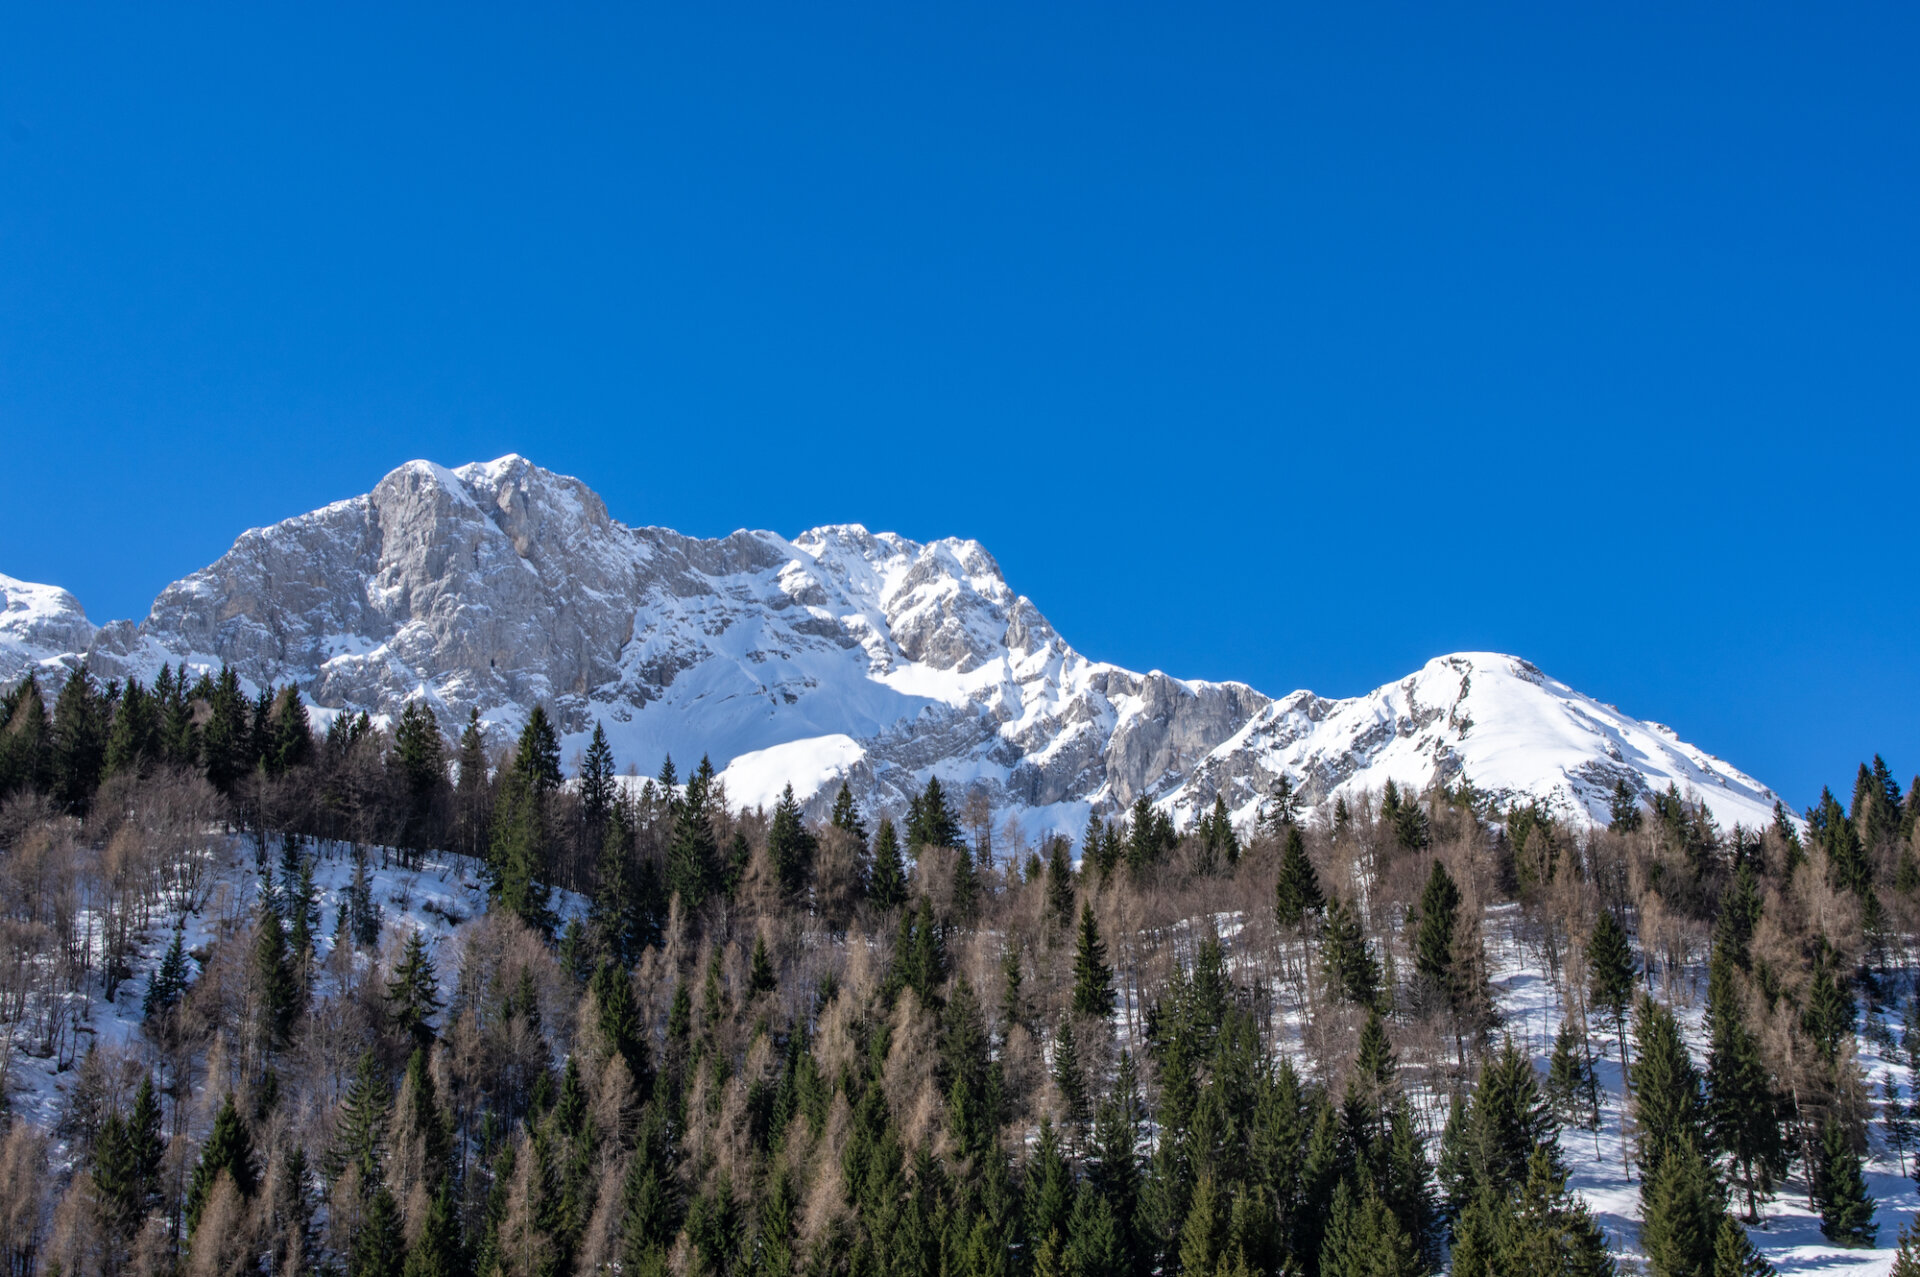 3 - Gita al rifugio Alpe Corte, lago Branchino e passo dei laghi gemelli online